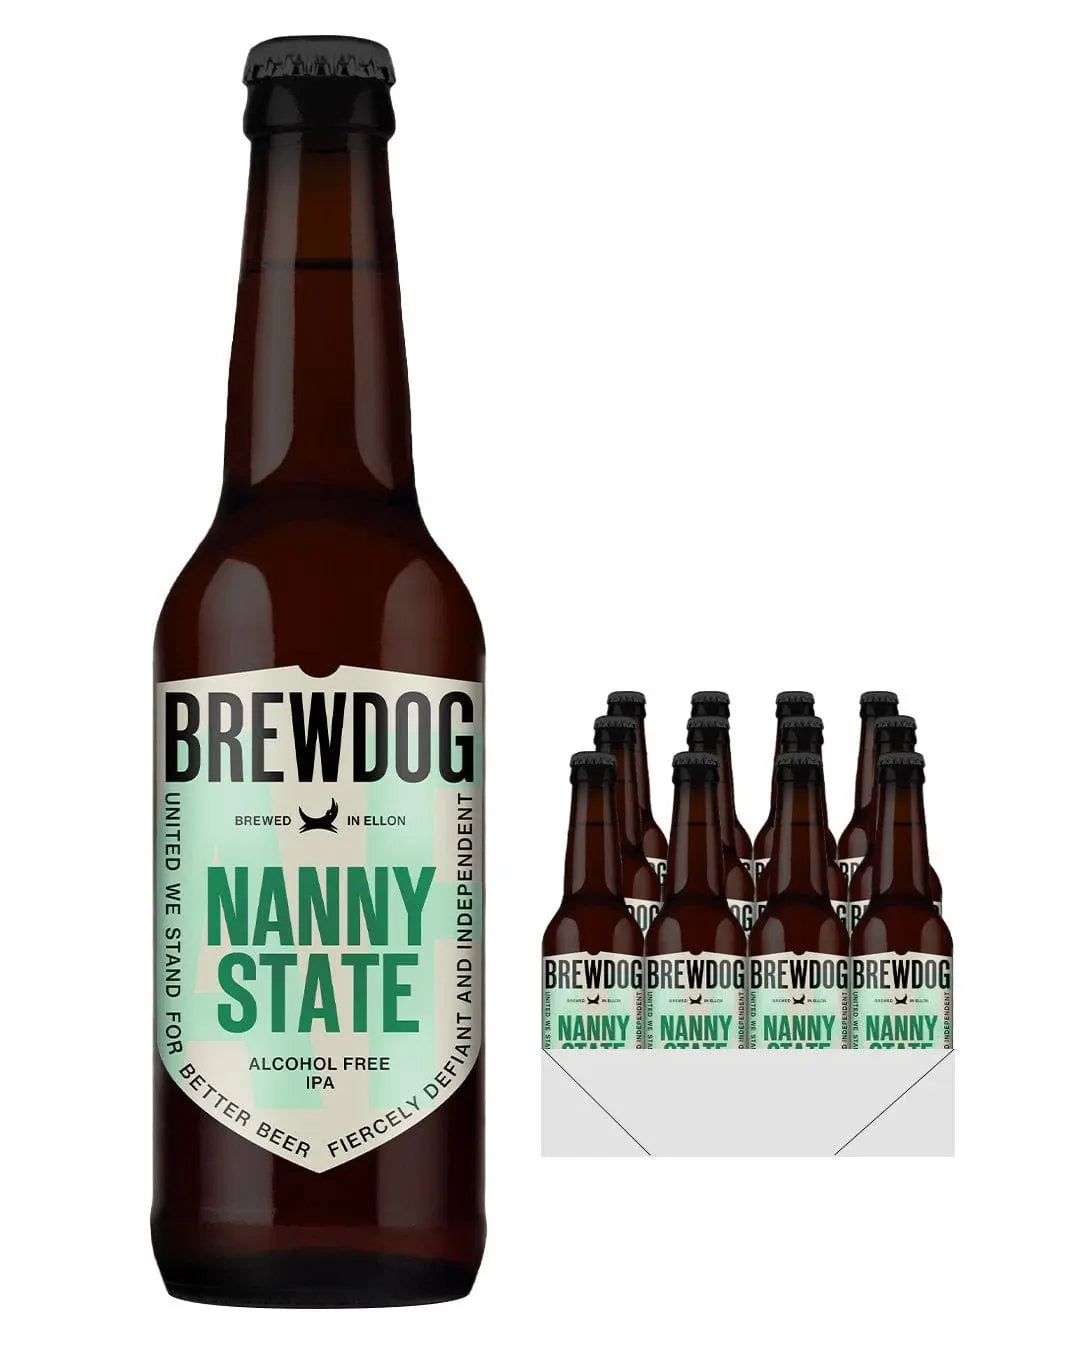 BrewDog Nanny State Beer Bottle, 330 ml Beer